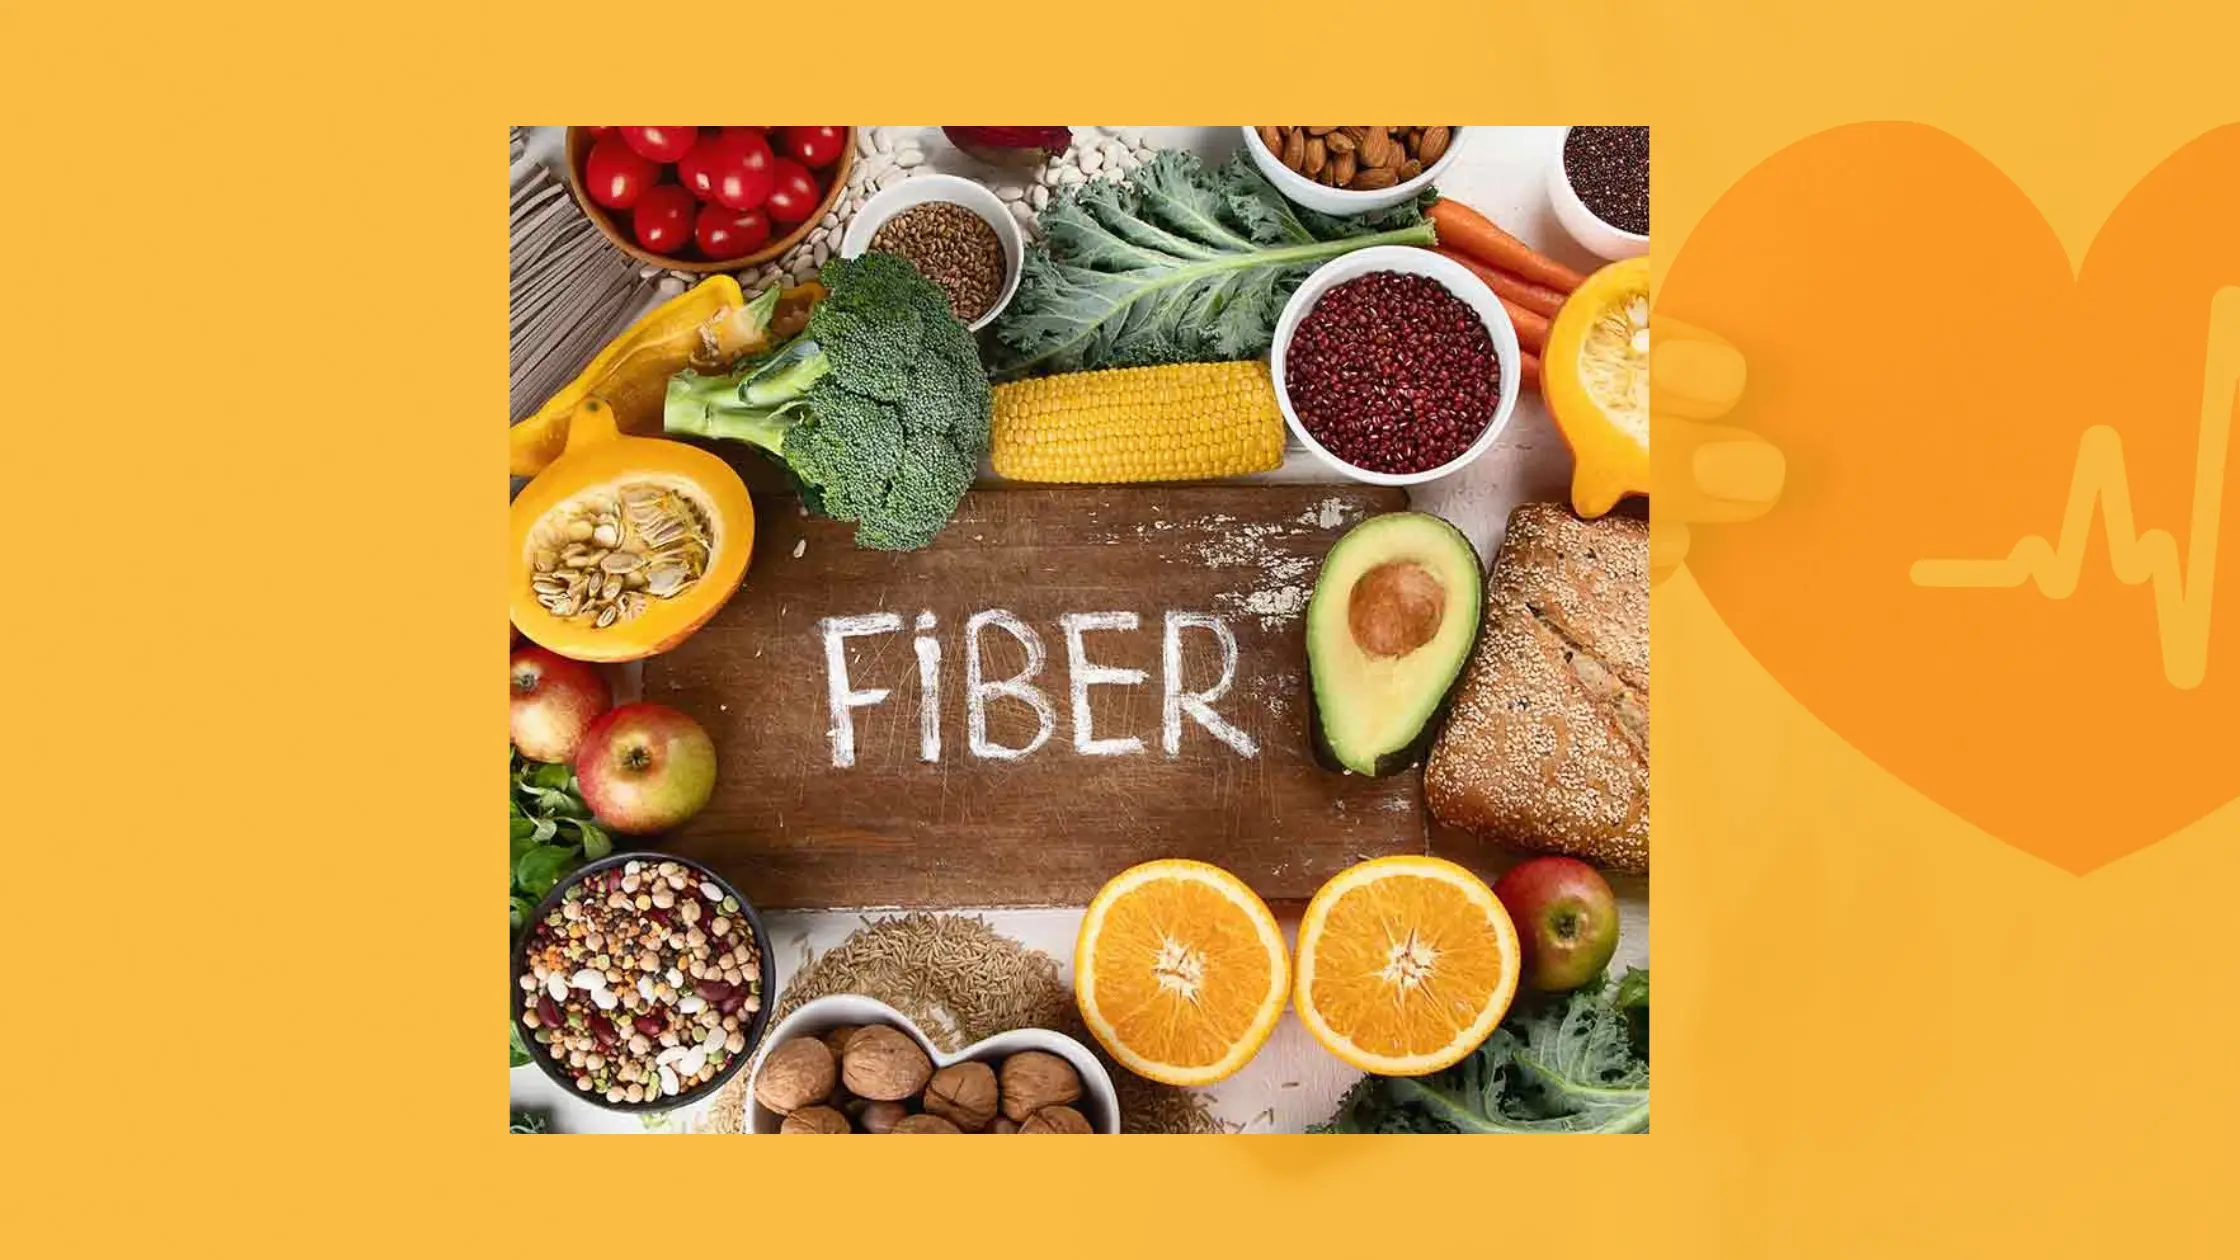 Fiber for reducing Cholesterol